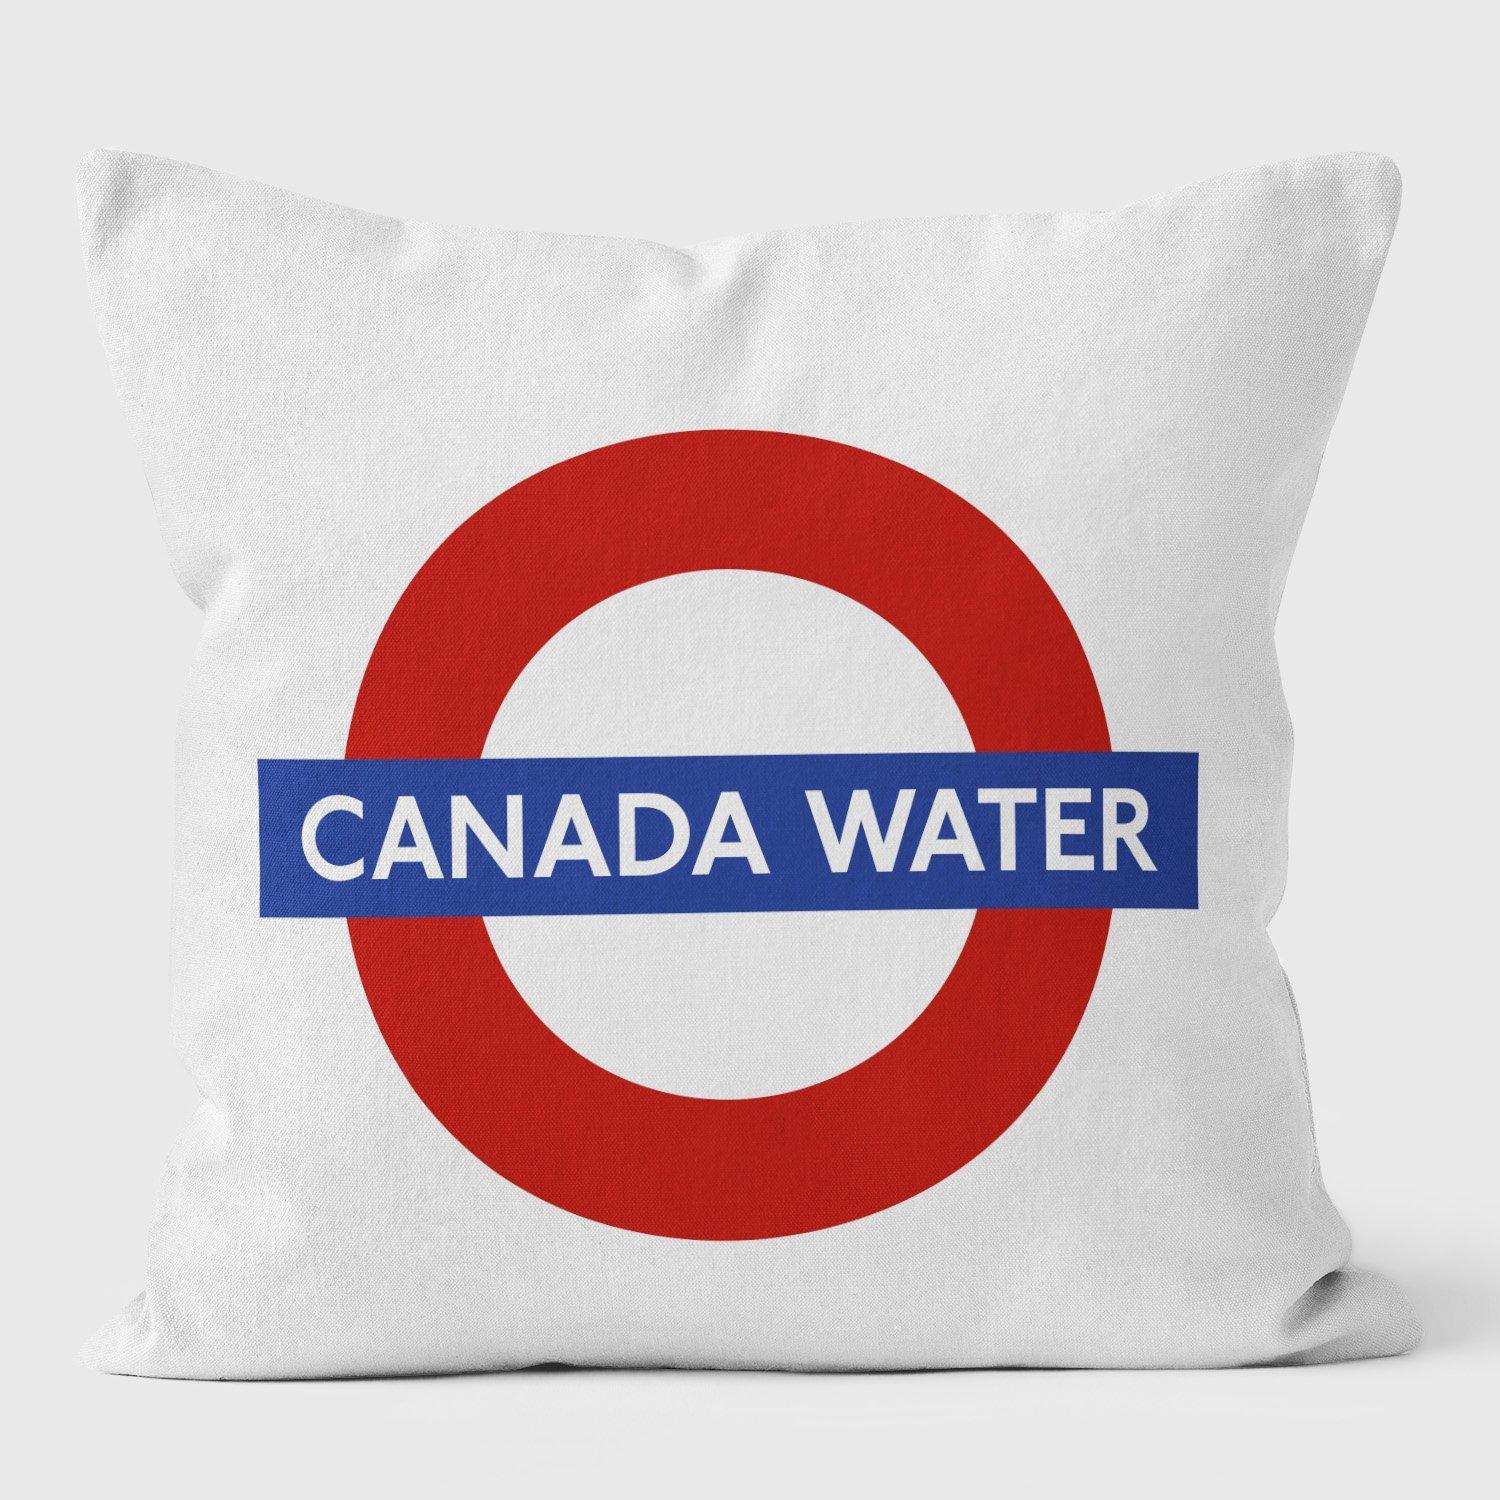 Canada Water London Underground Tube Station Roundel Cushion - Handmade Cushions UK - WeLoveCushions